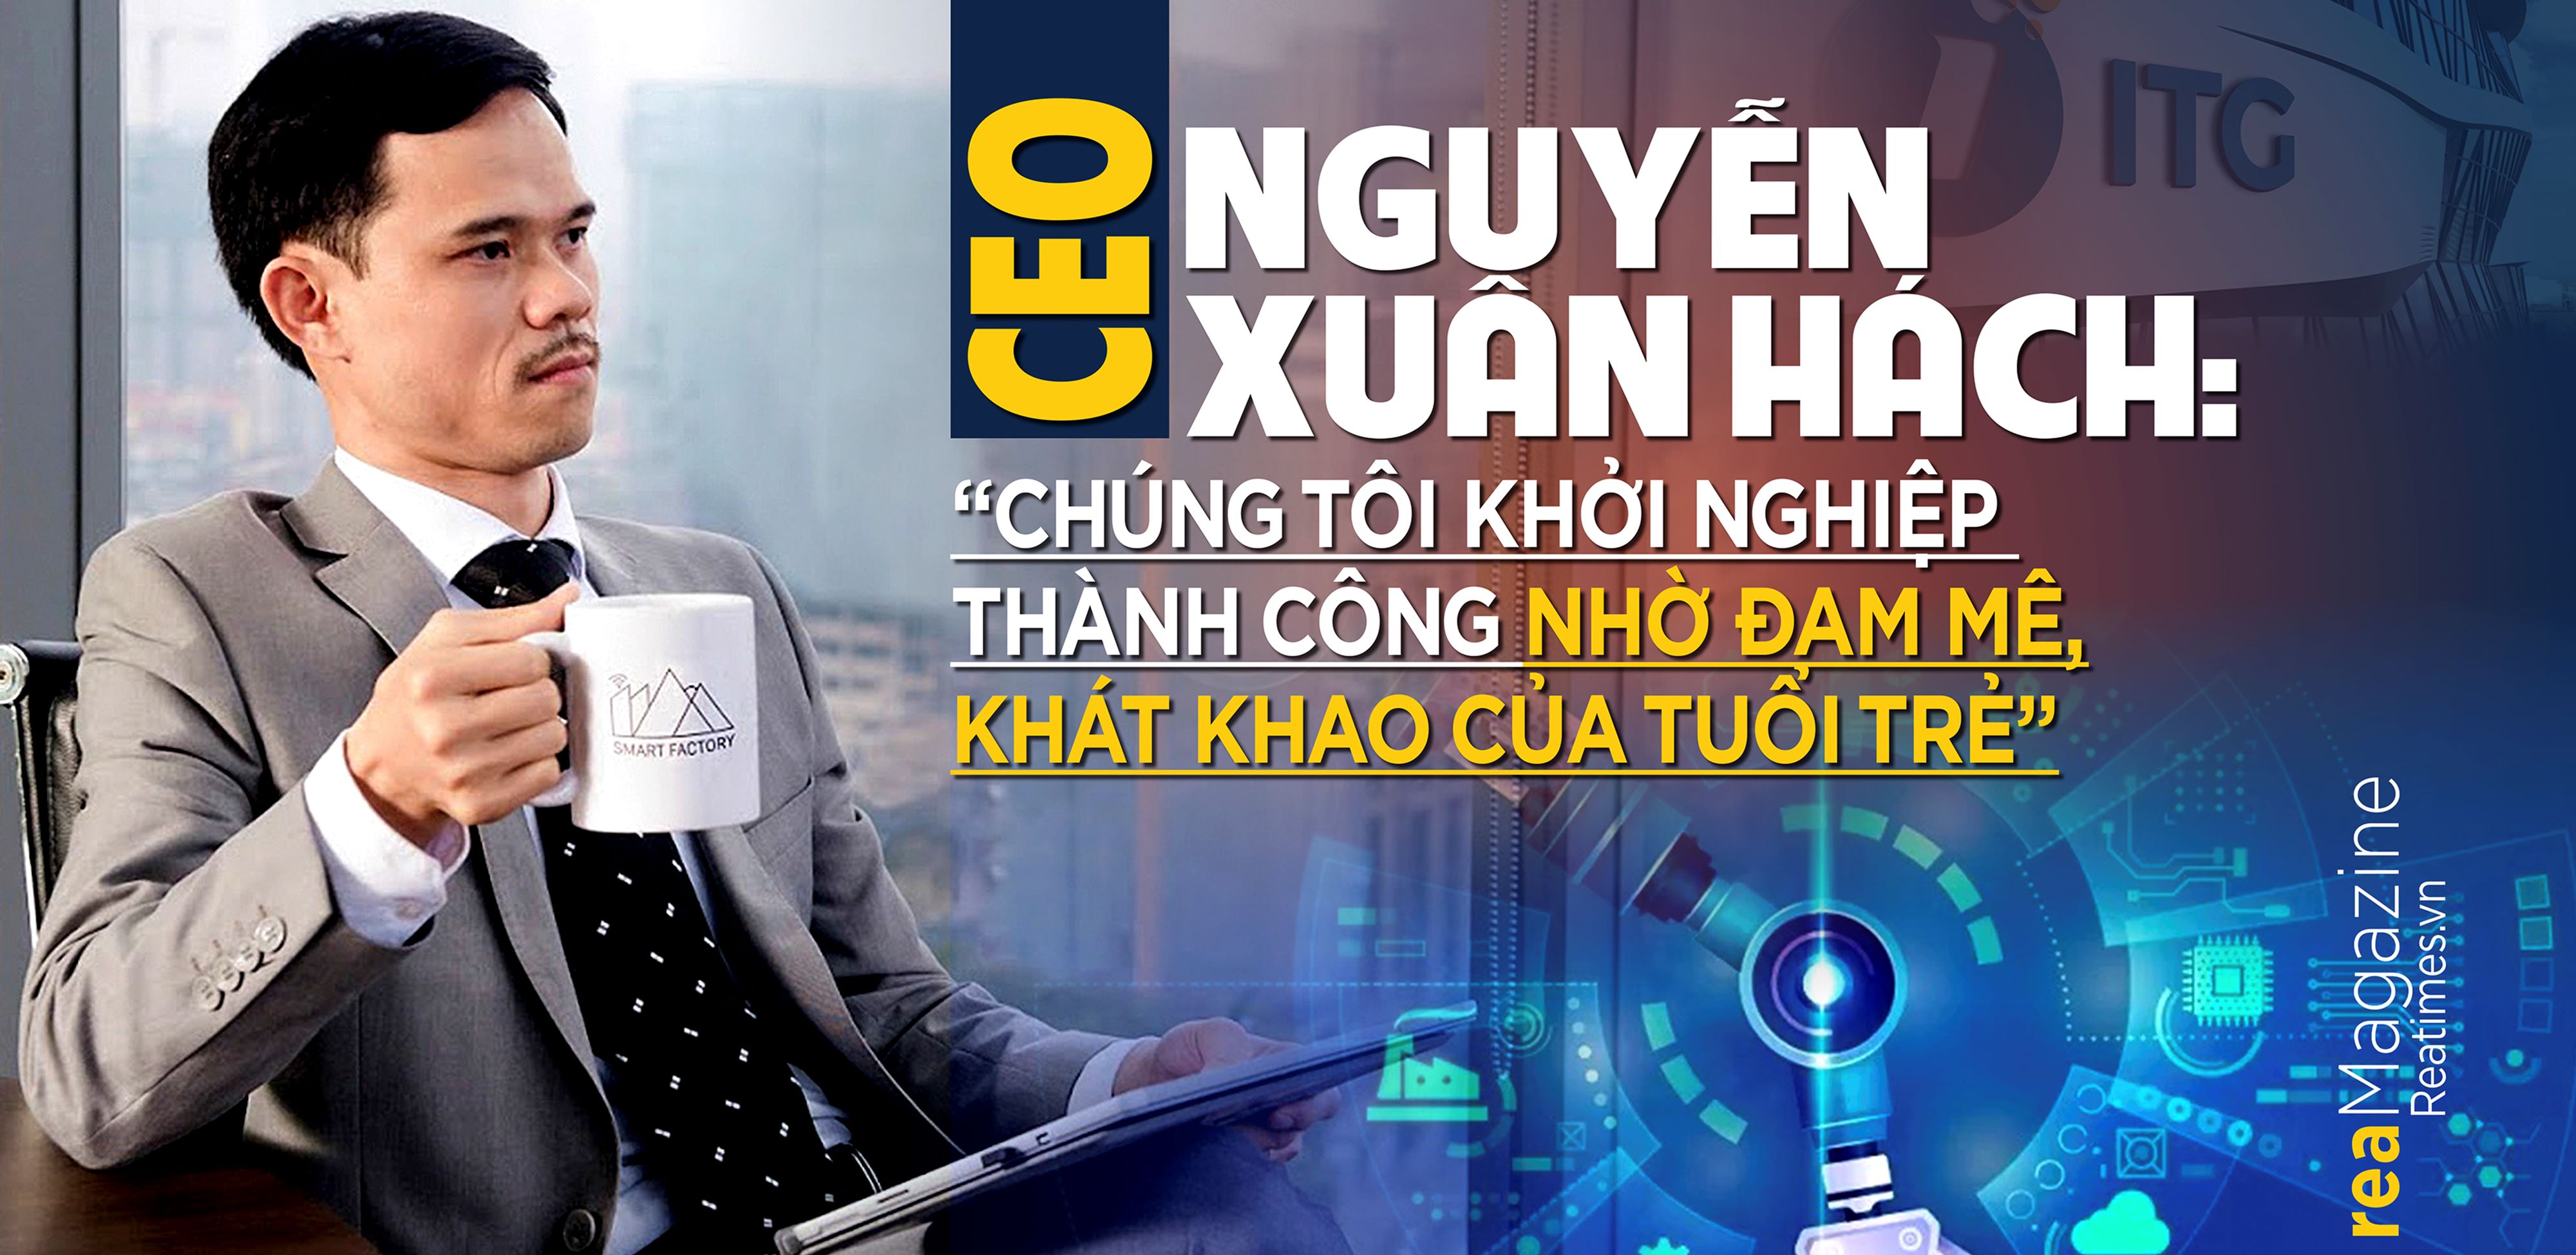 CEO Nguyễn Xuân Hách: “Chúng tôi khởi nghiệp thành công nhờ đam mê, khát khao của tuổi trẻ”